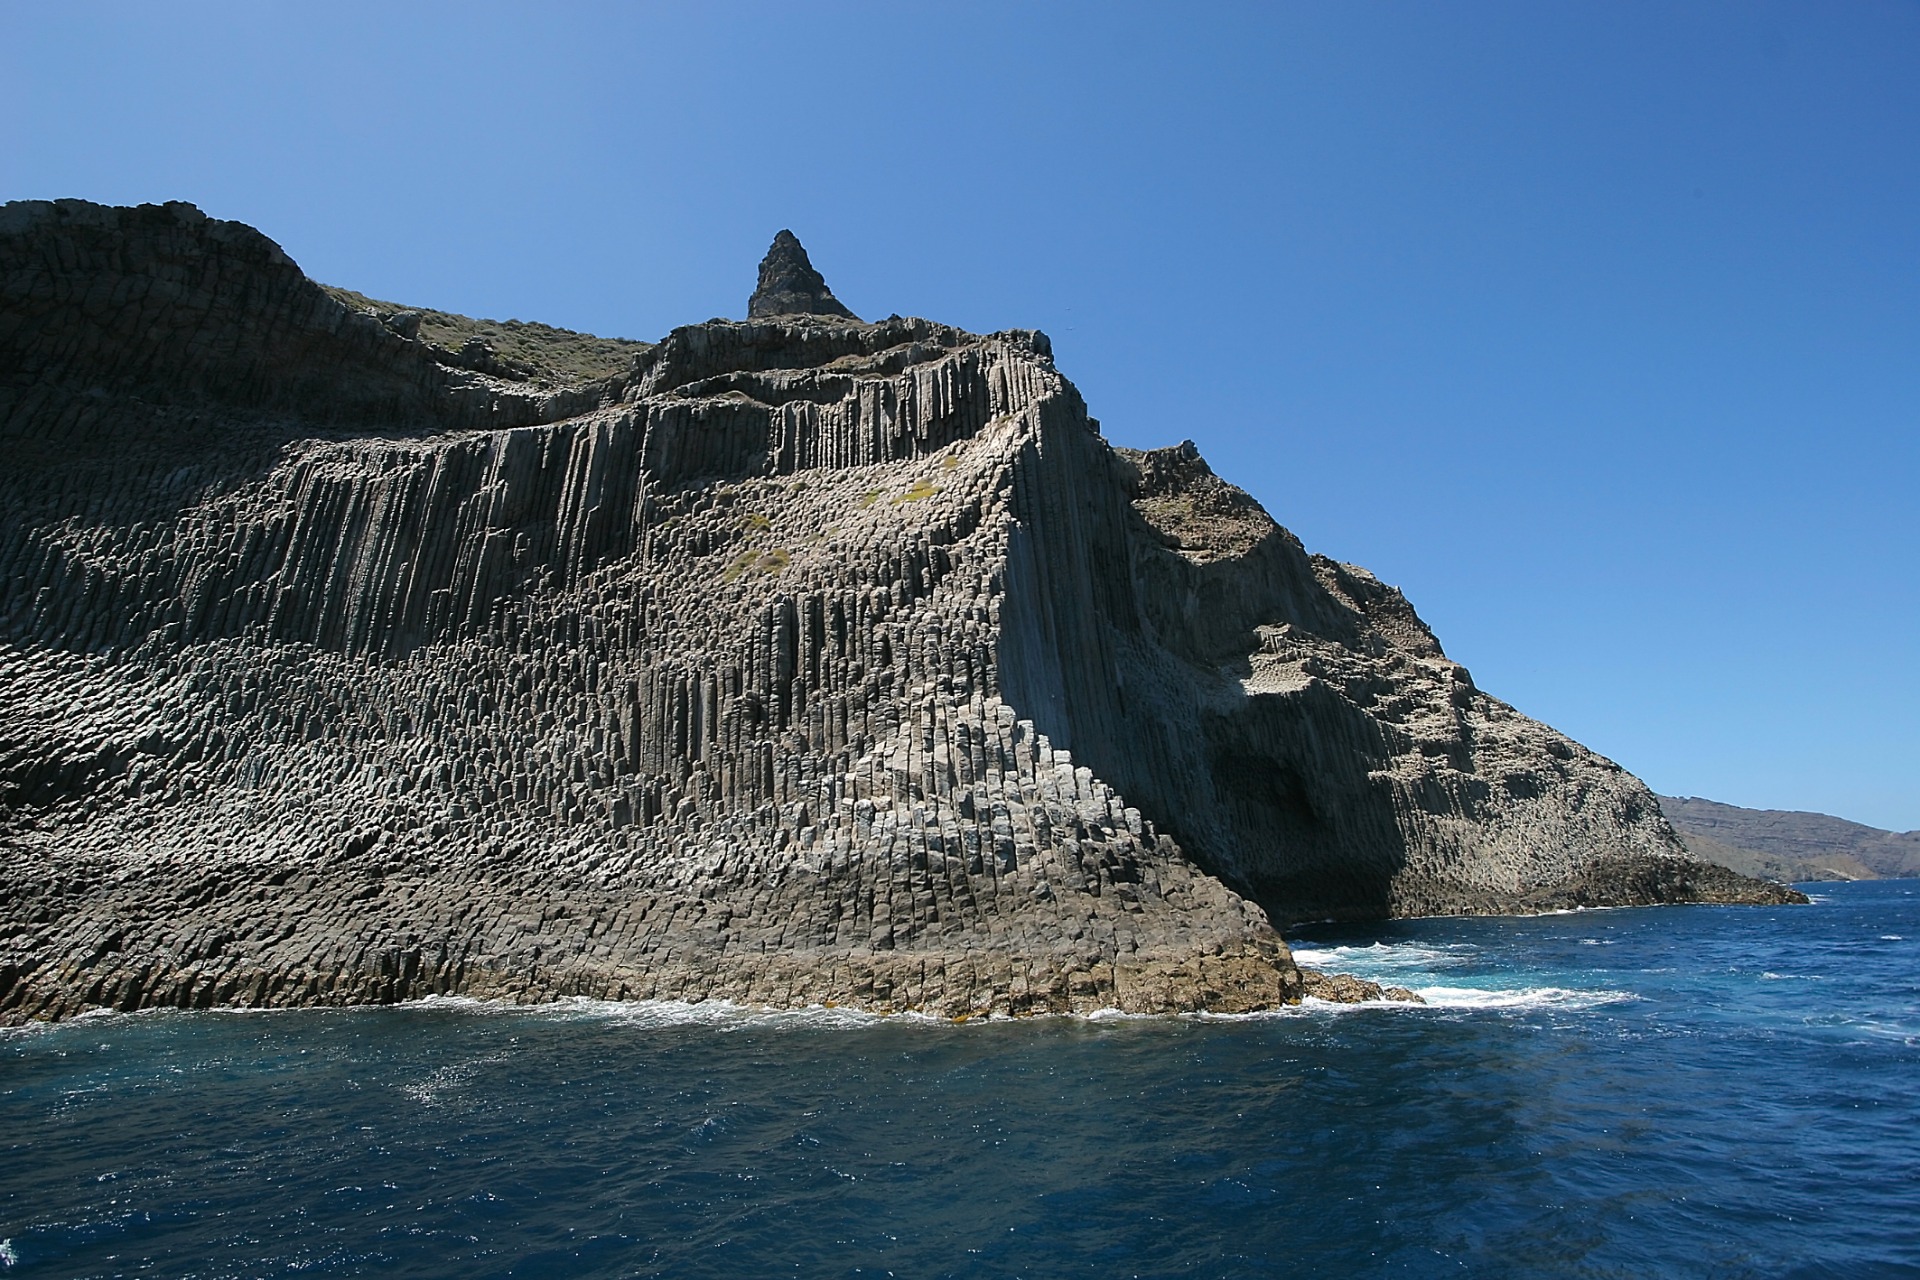  stone cliff in the sea